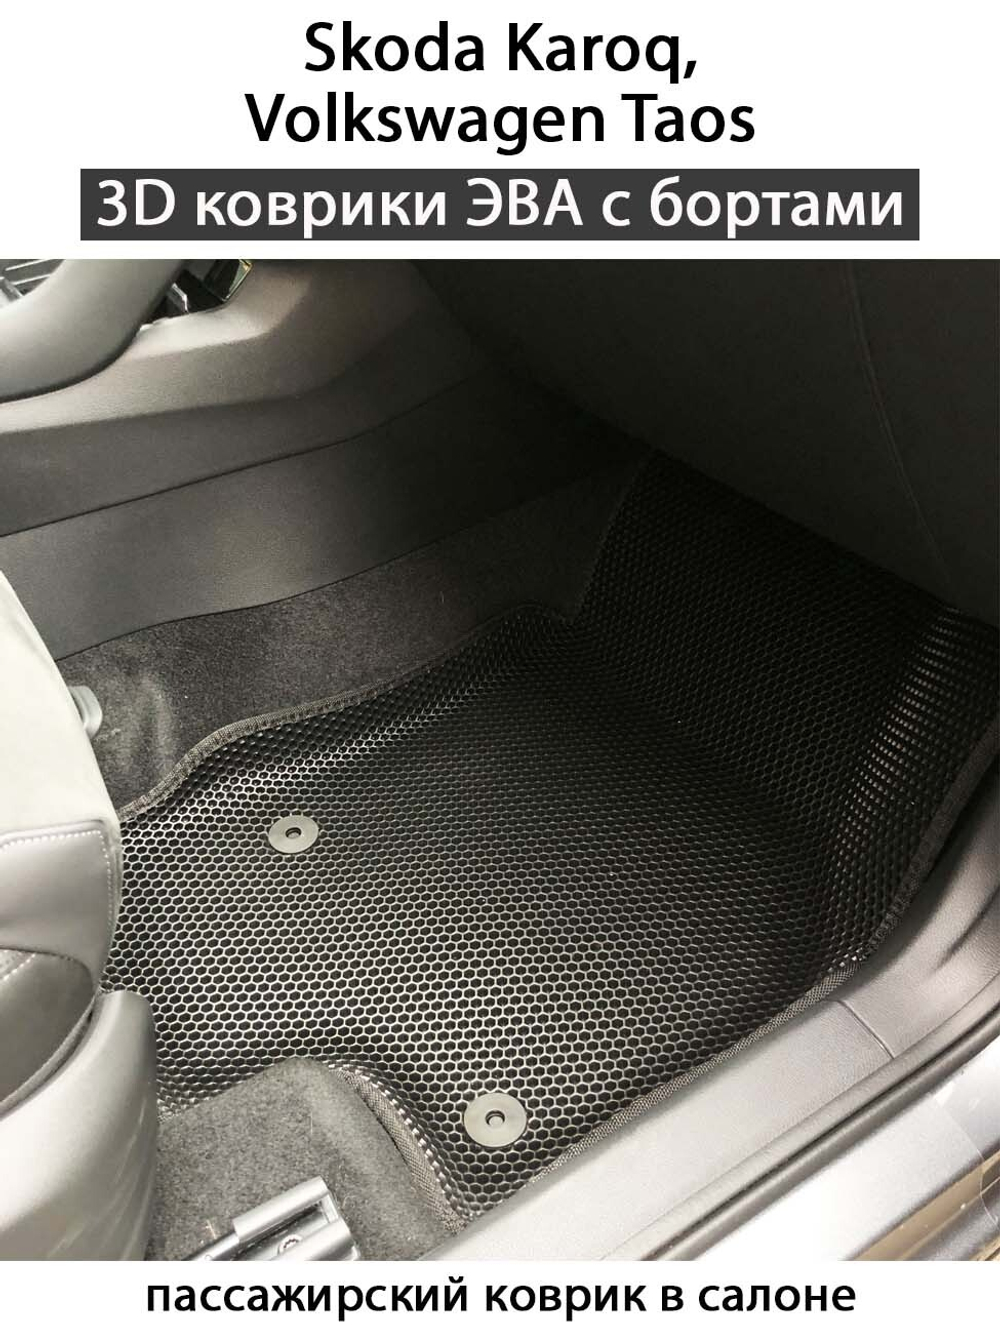 комплект эва ковриков в салон авто для skoda karoq / volkswagen taos 17-н.в. от supervip